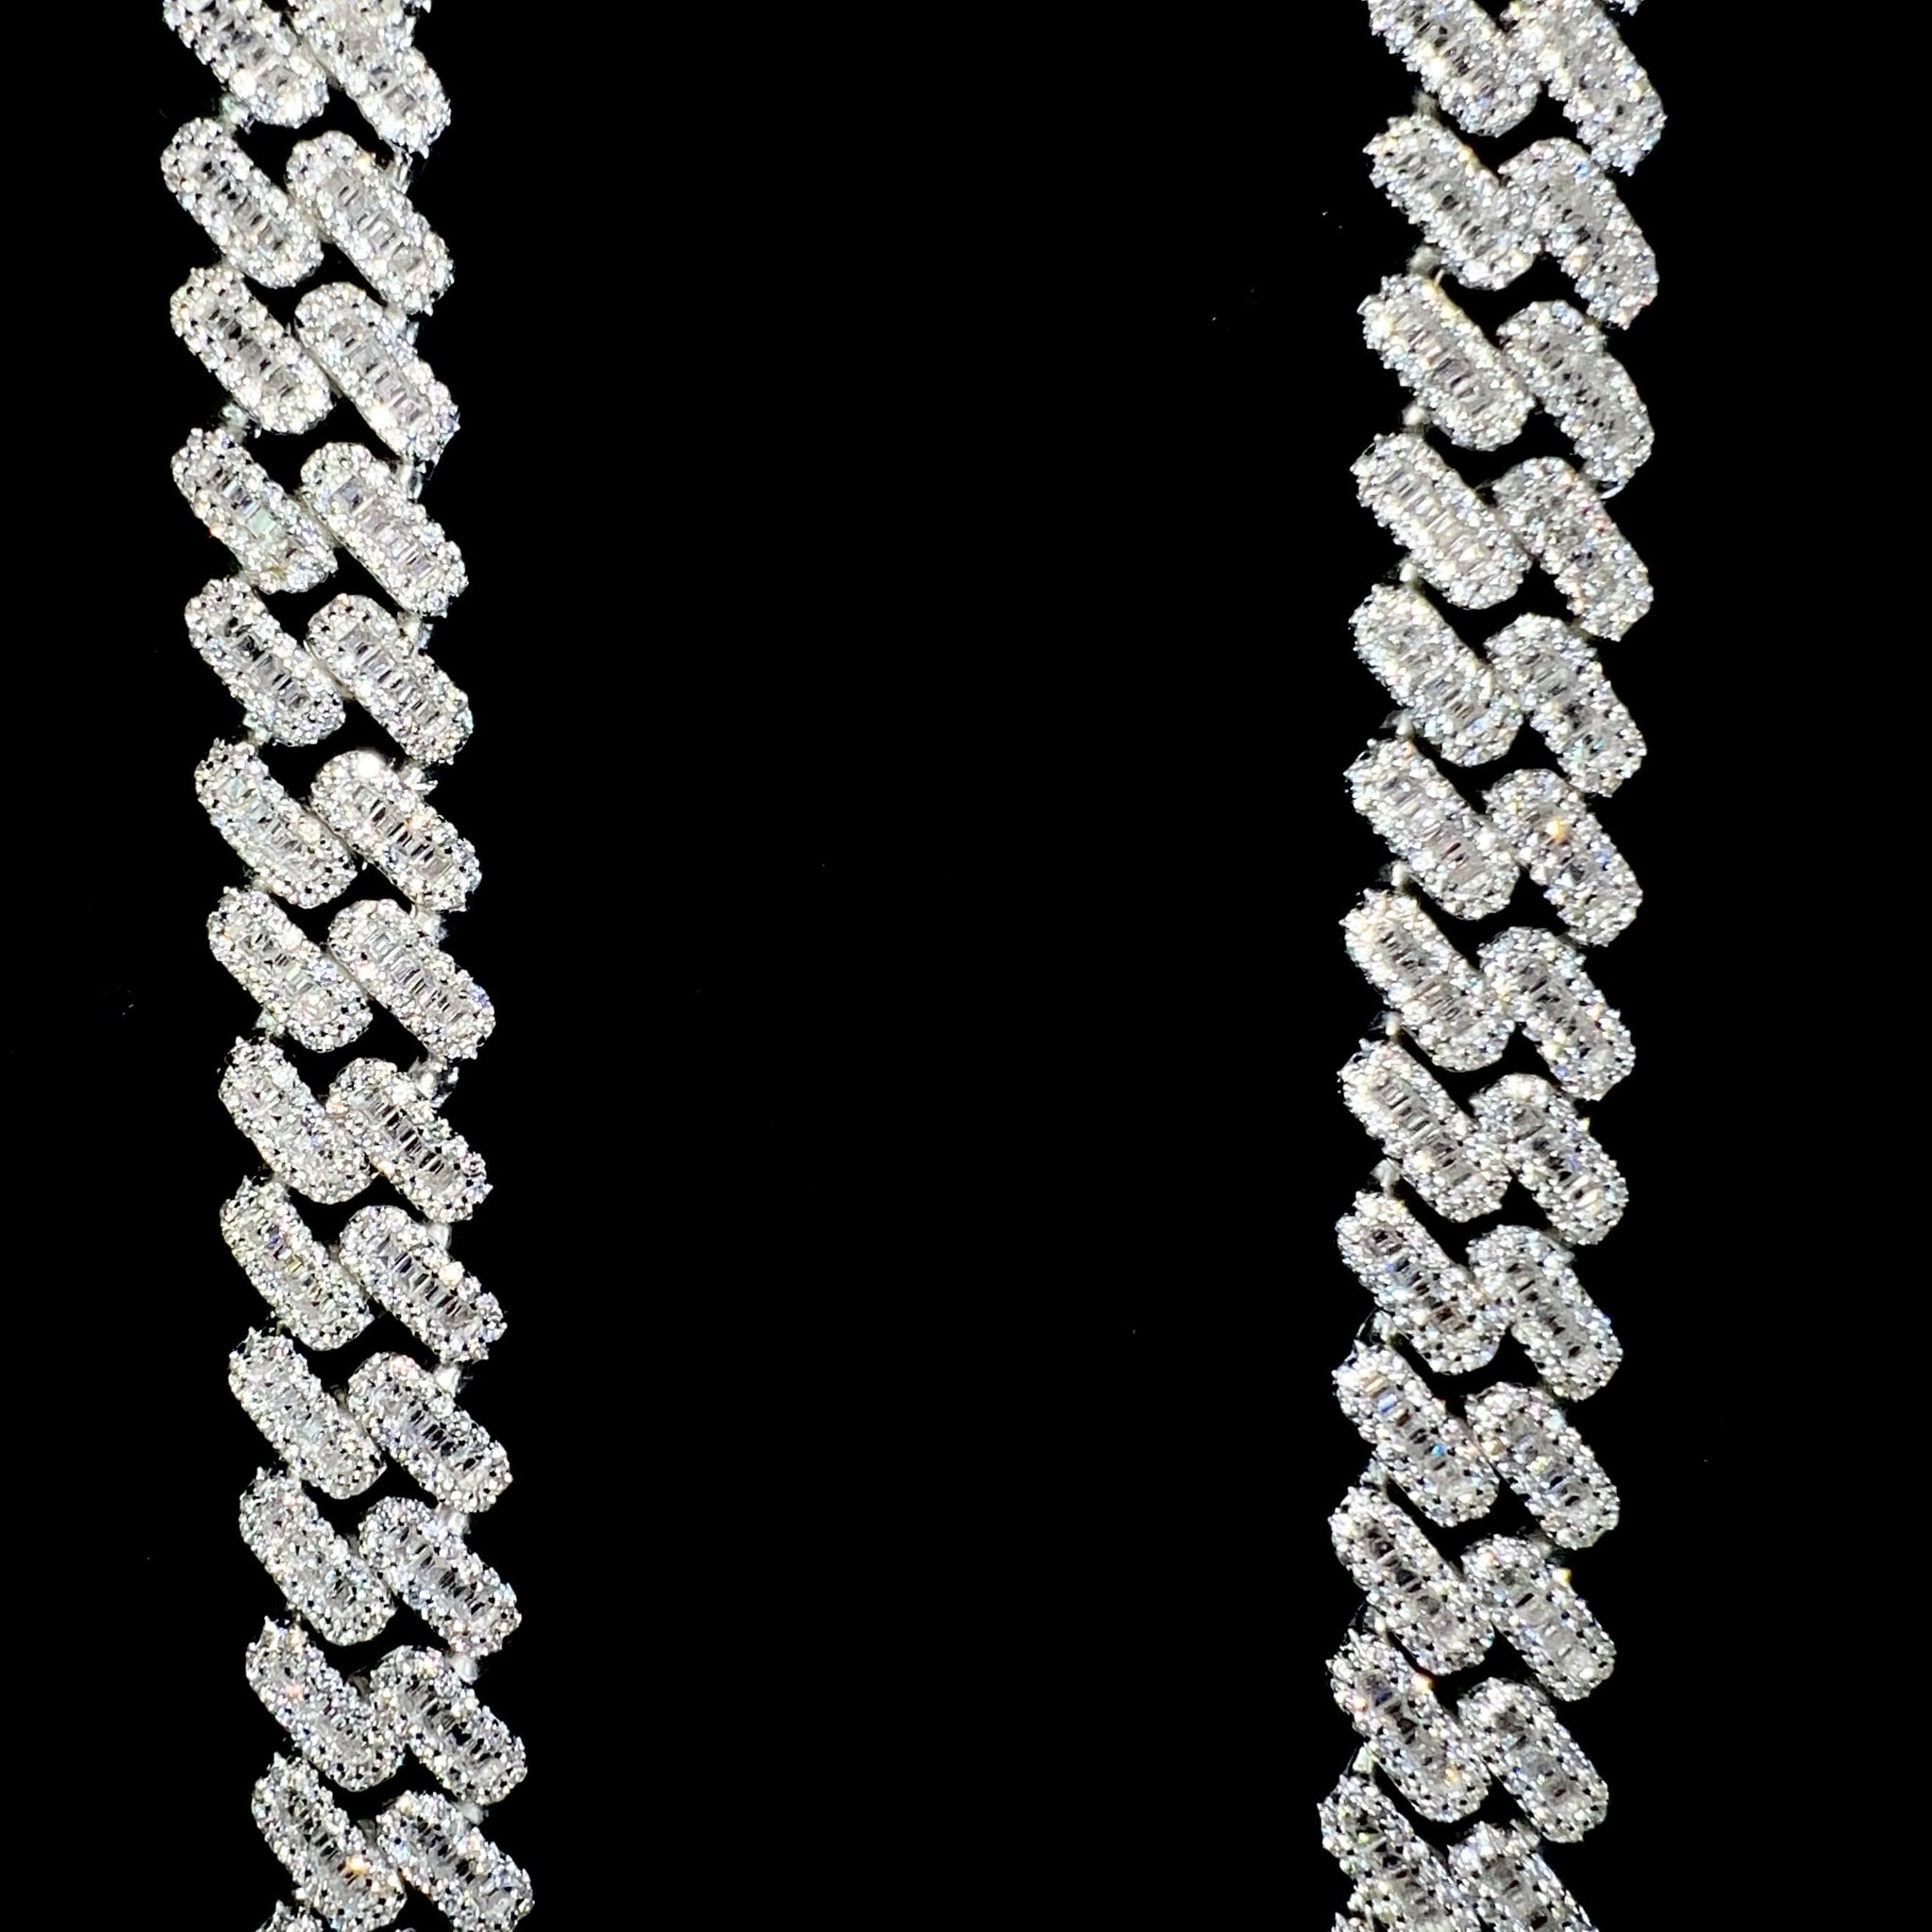 Baguette Cuban Prong Link Chain - 60cm / 12mm - Silver 925 - Sehgal Dubai Collection